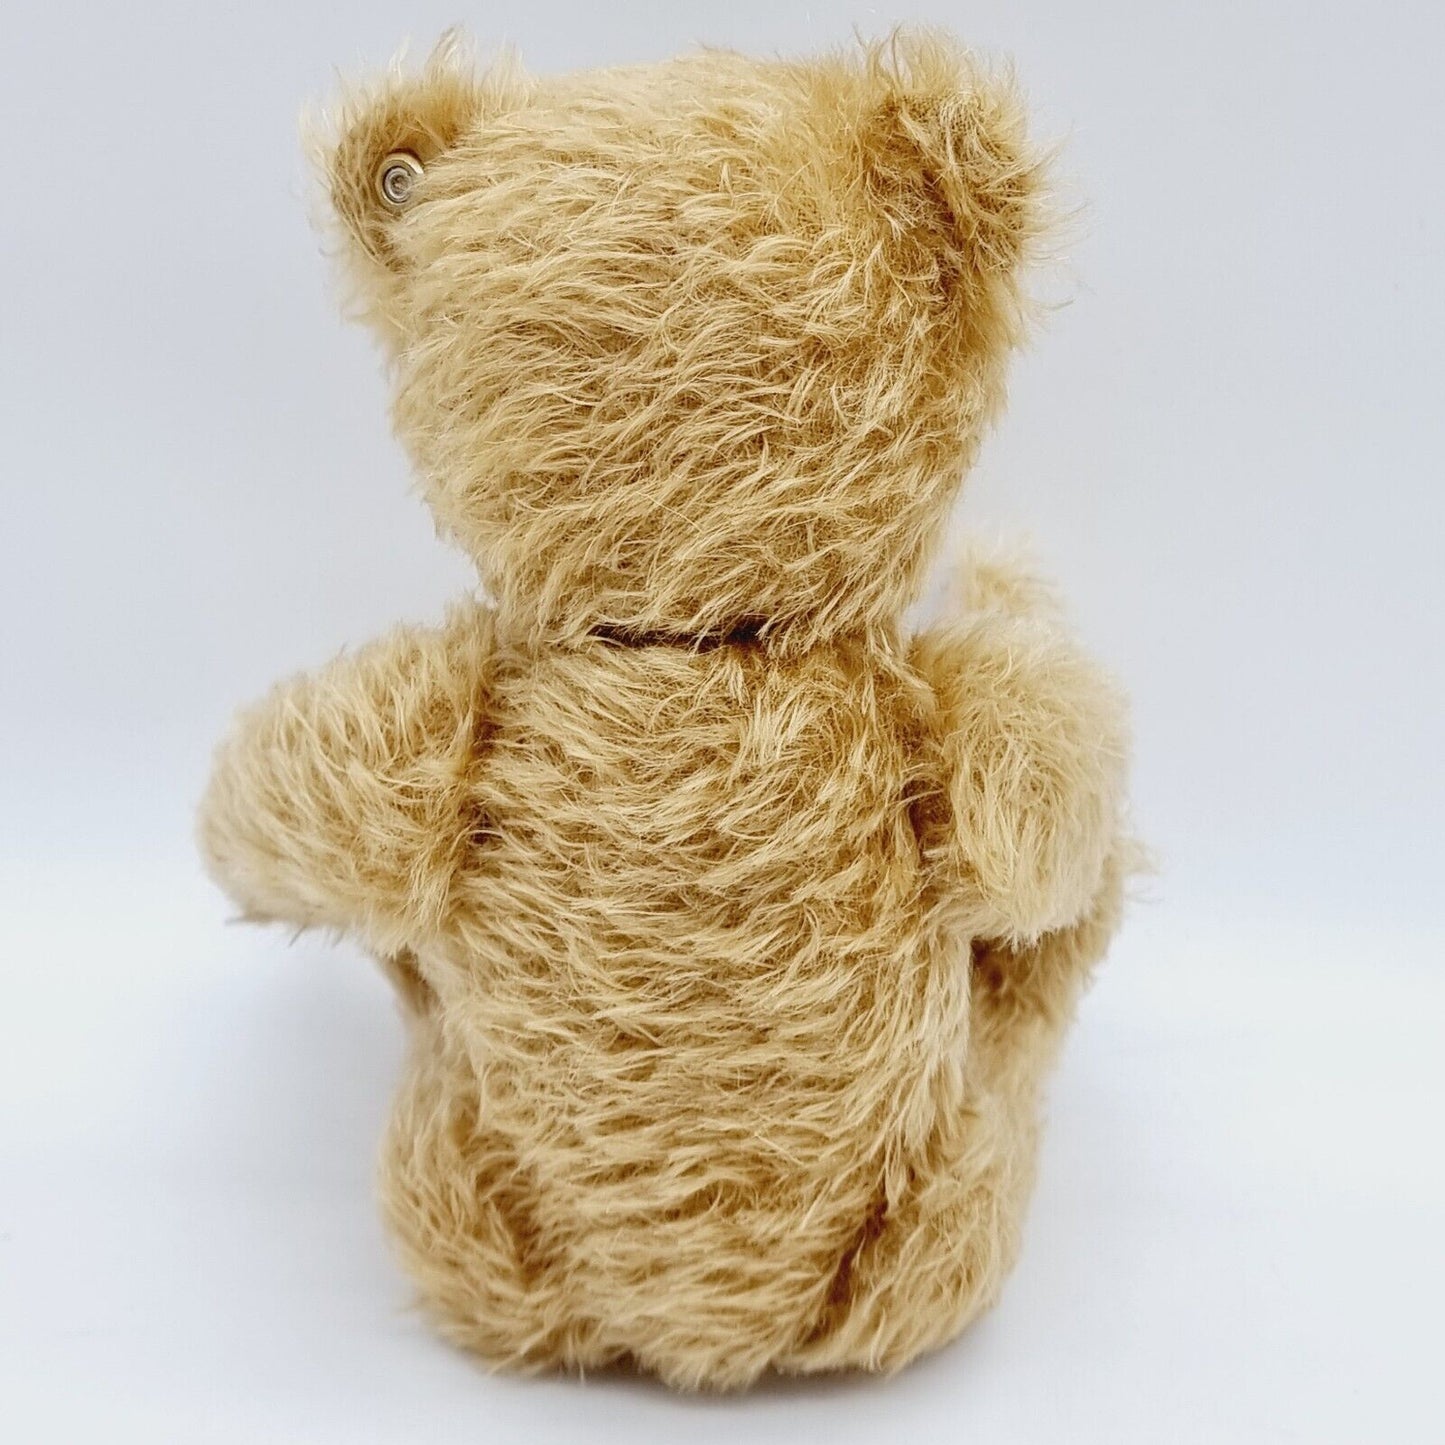 Steiff Teddybär Mr. Googly 036620 limitiert 1925 aus 2010 31cm Mohair